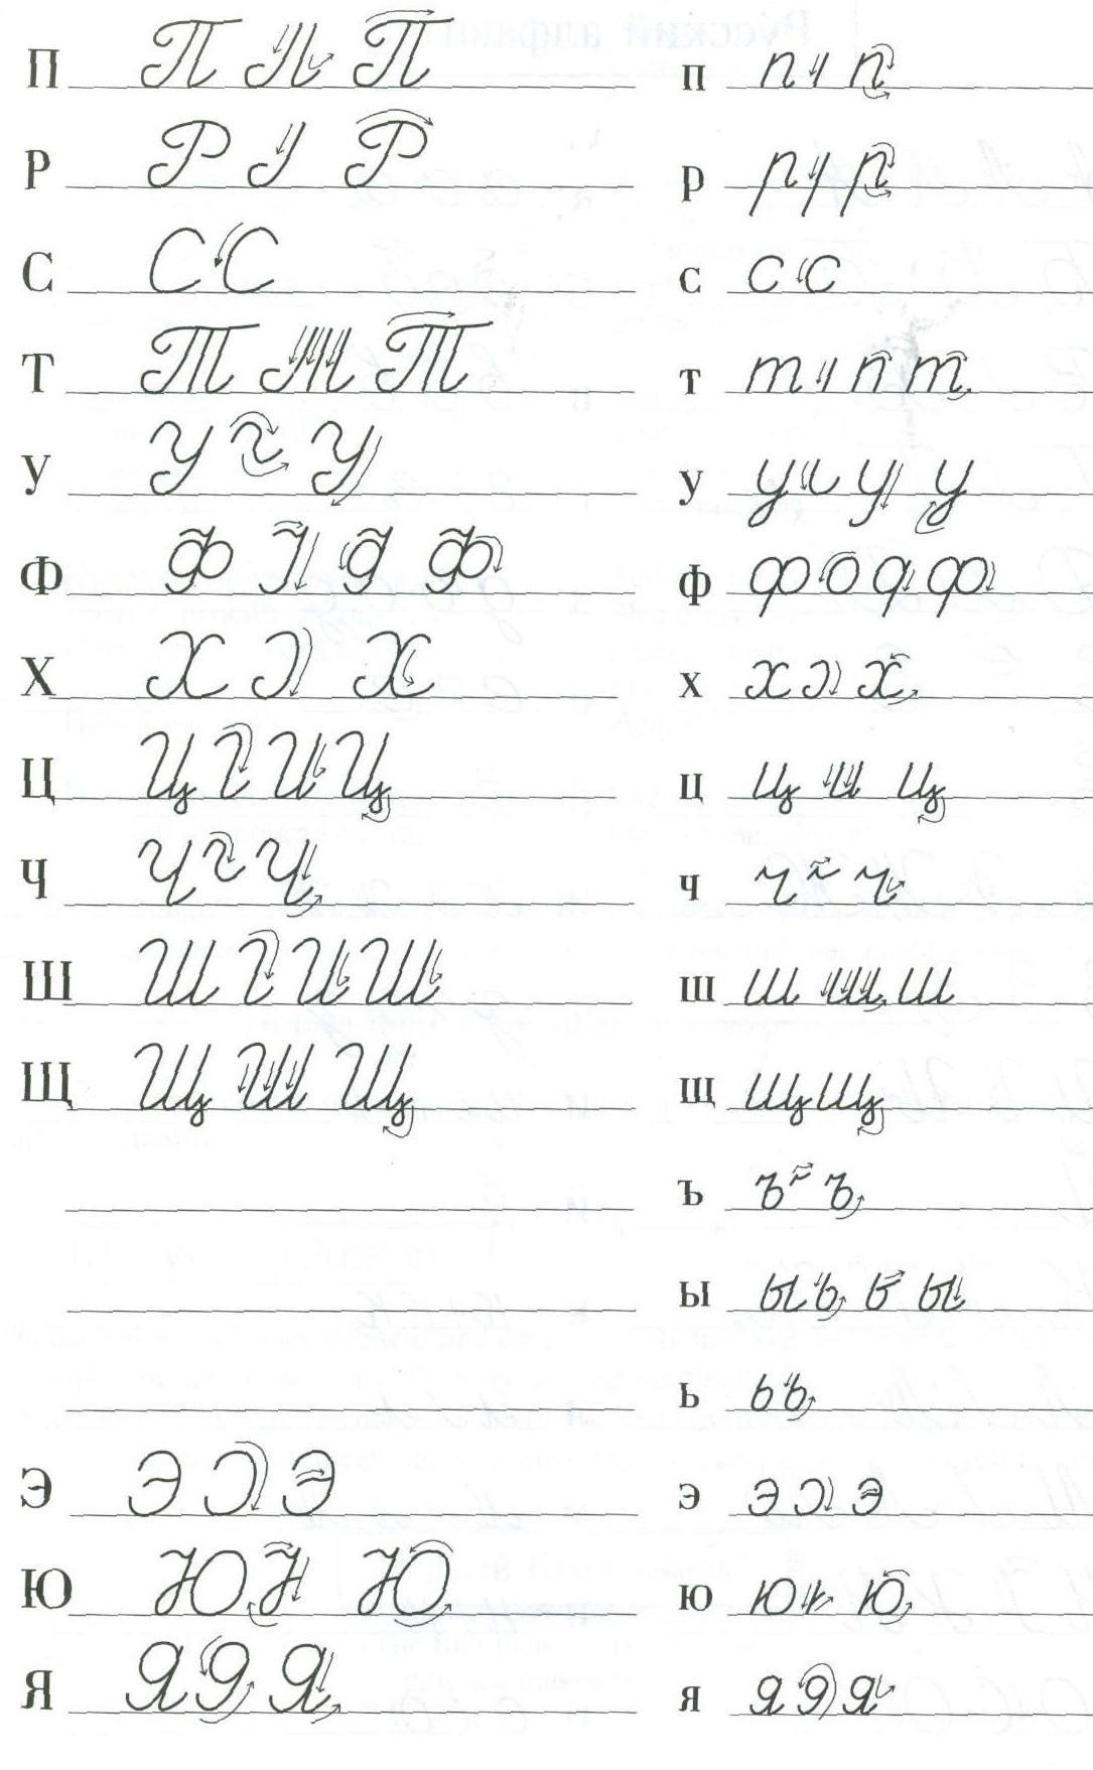 Fiche n ° 2. Bonne écriture de lettres russes manuscrites.